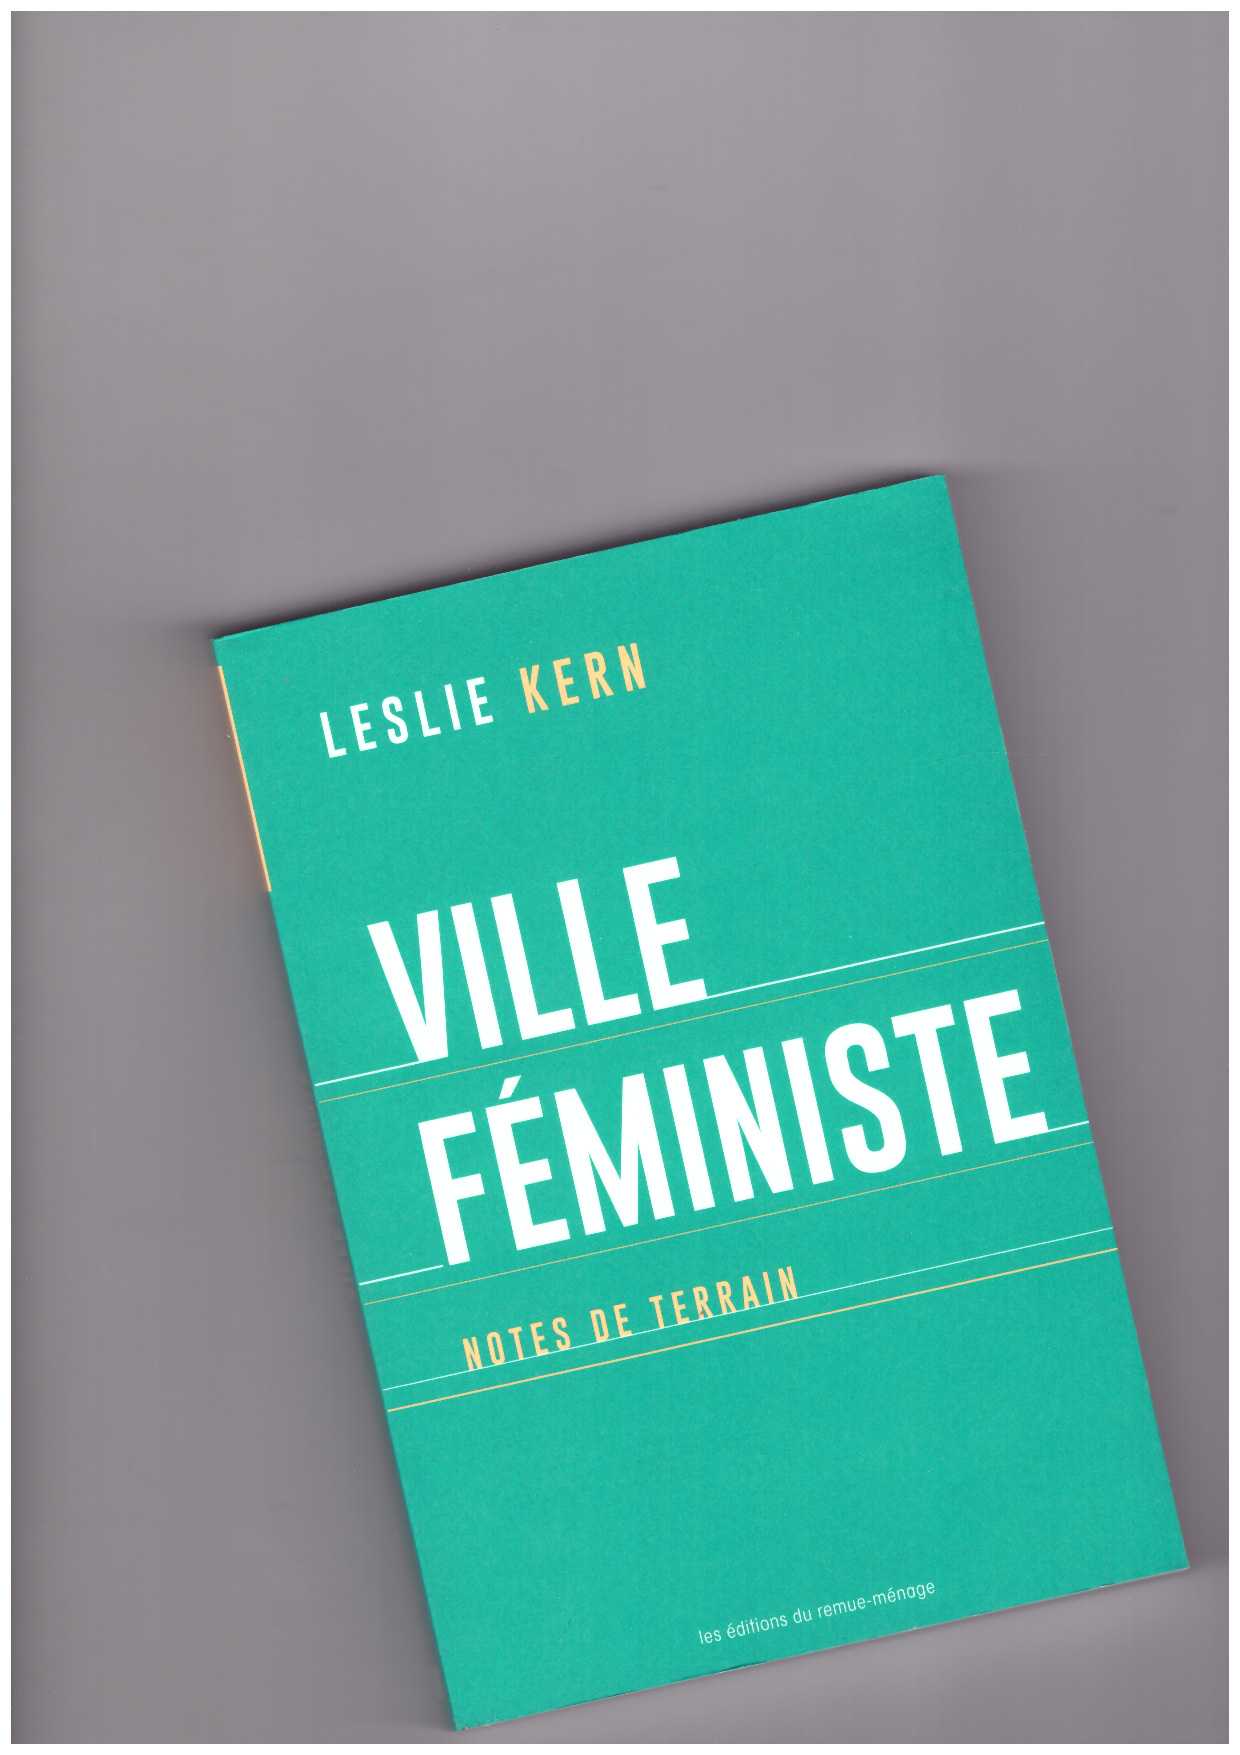 KERN, Leslie  - Ville féministe